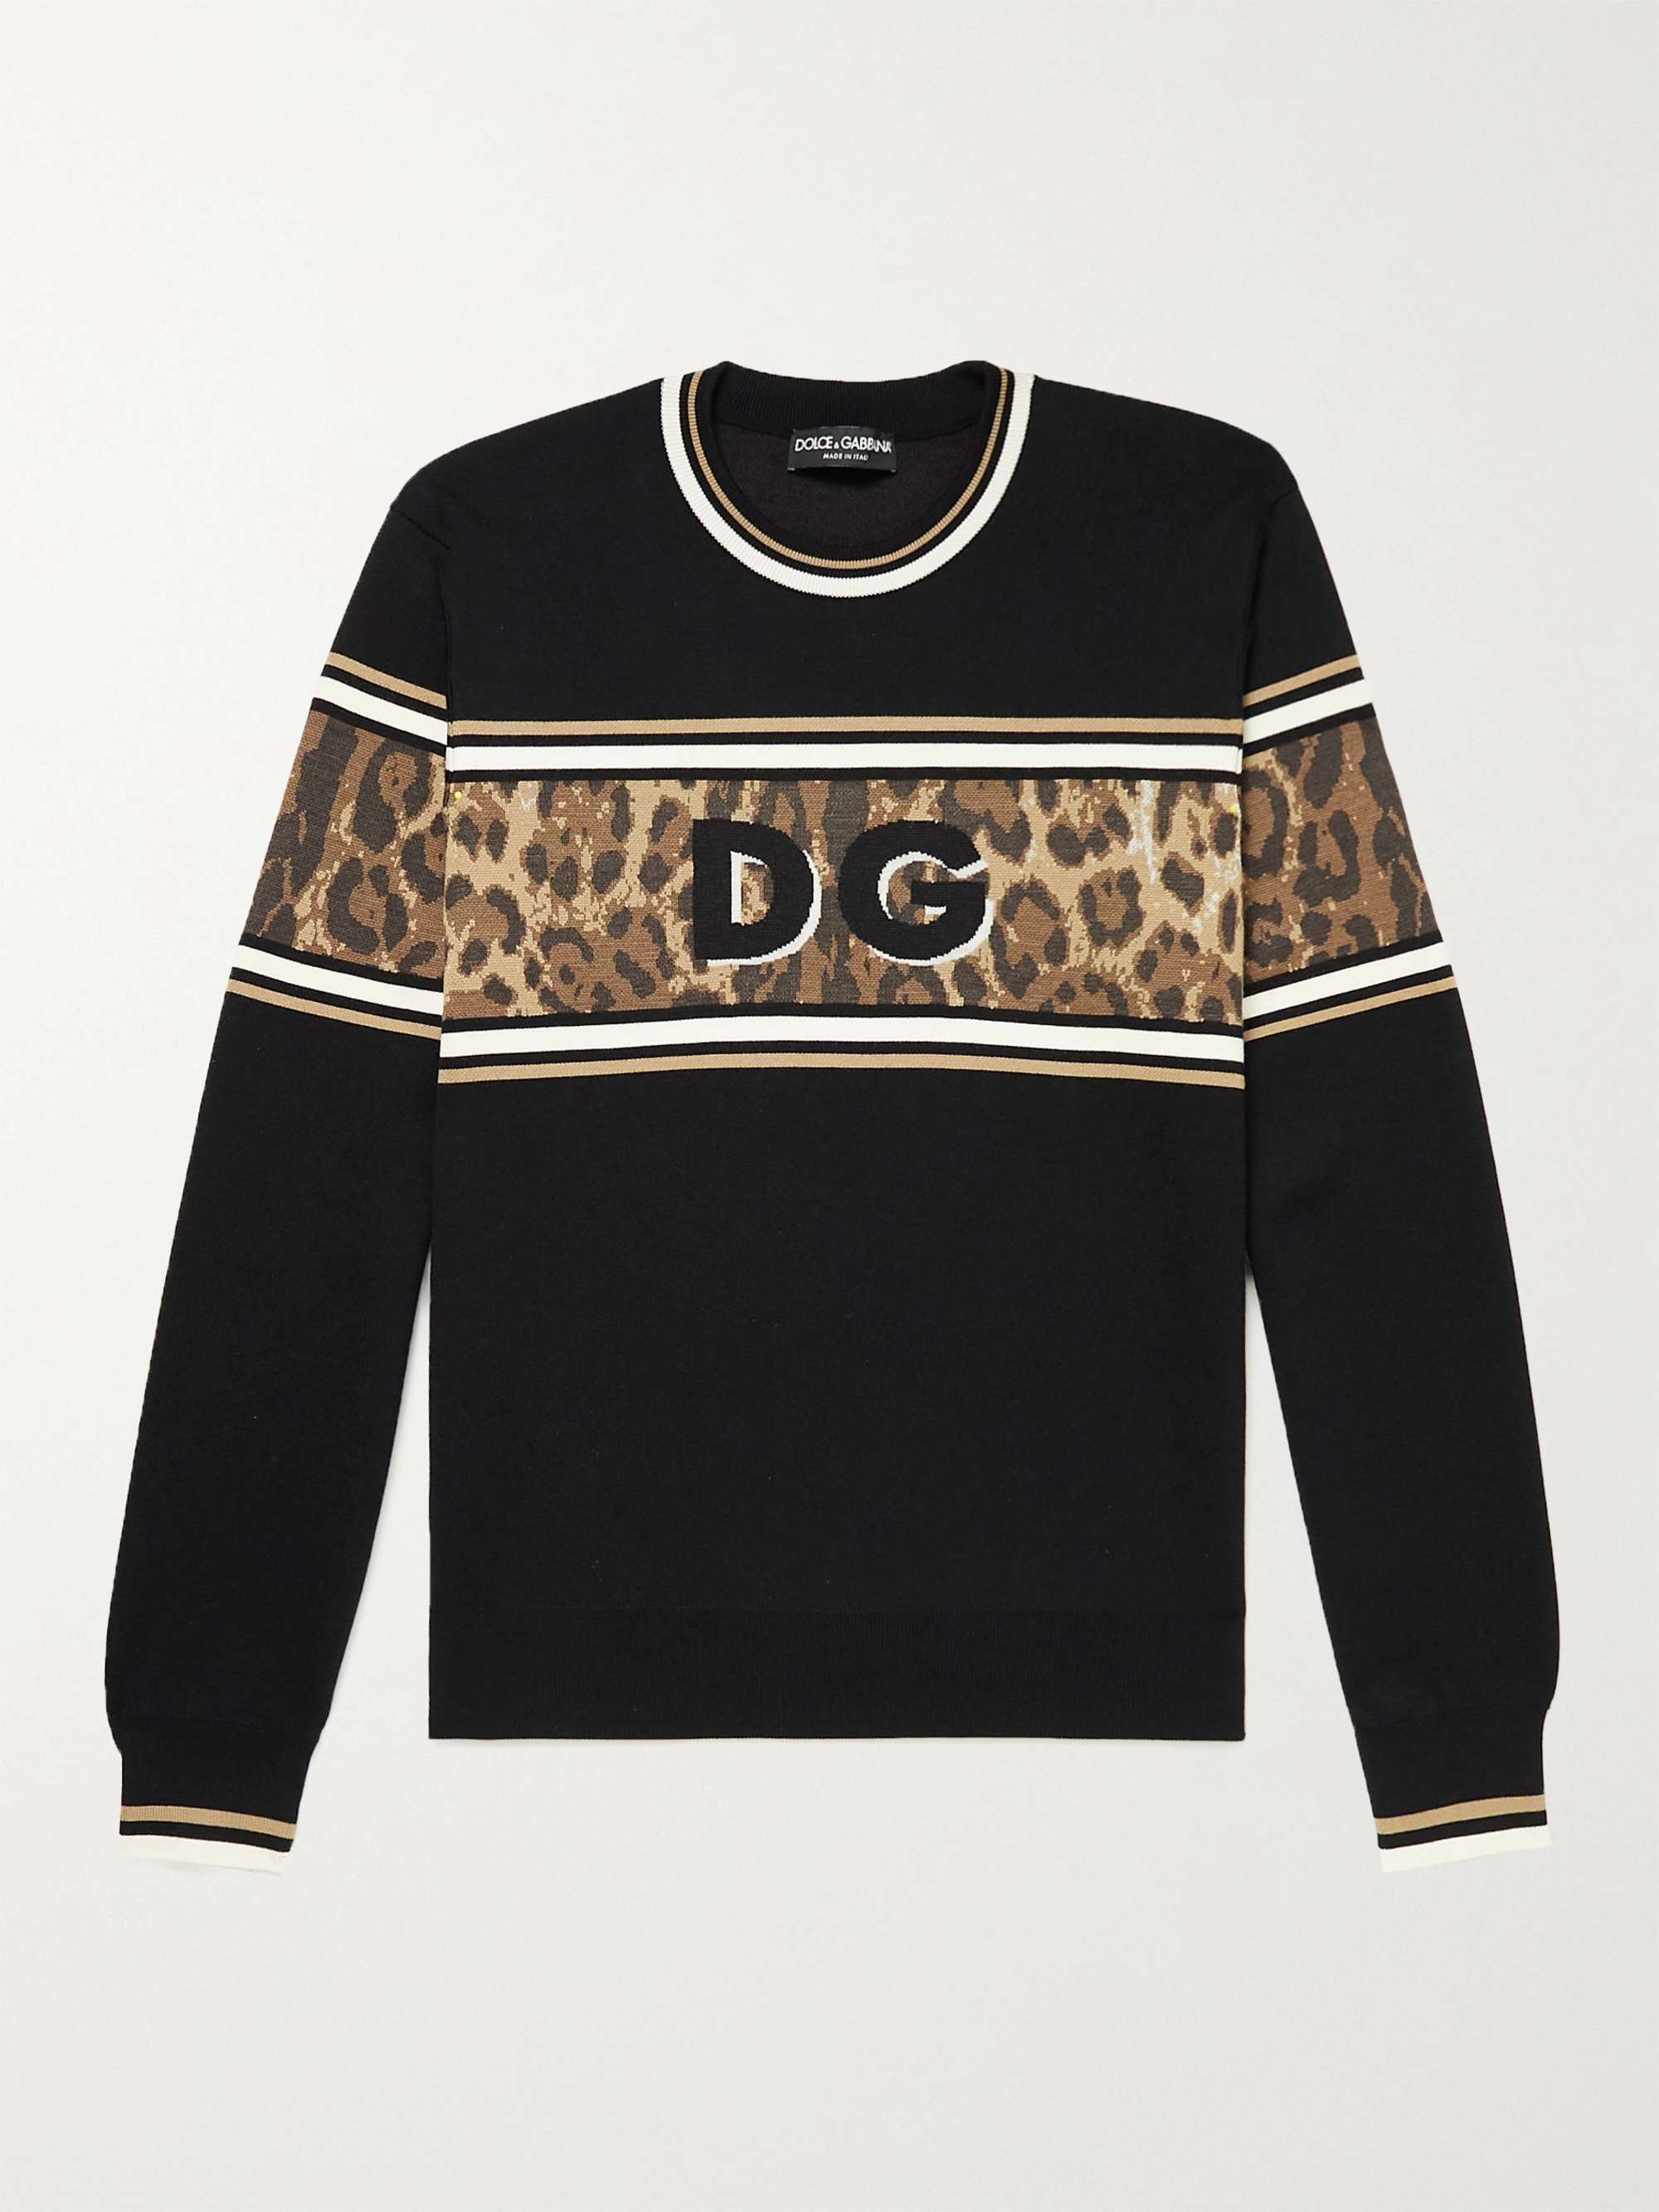 Dolce & Gabbana Leopard Print Underwear T-shirt Vintage -  Canada